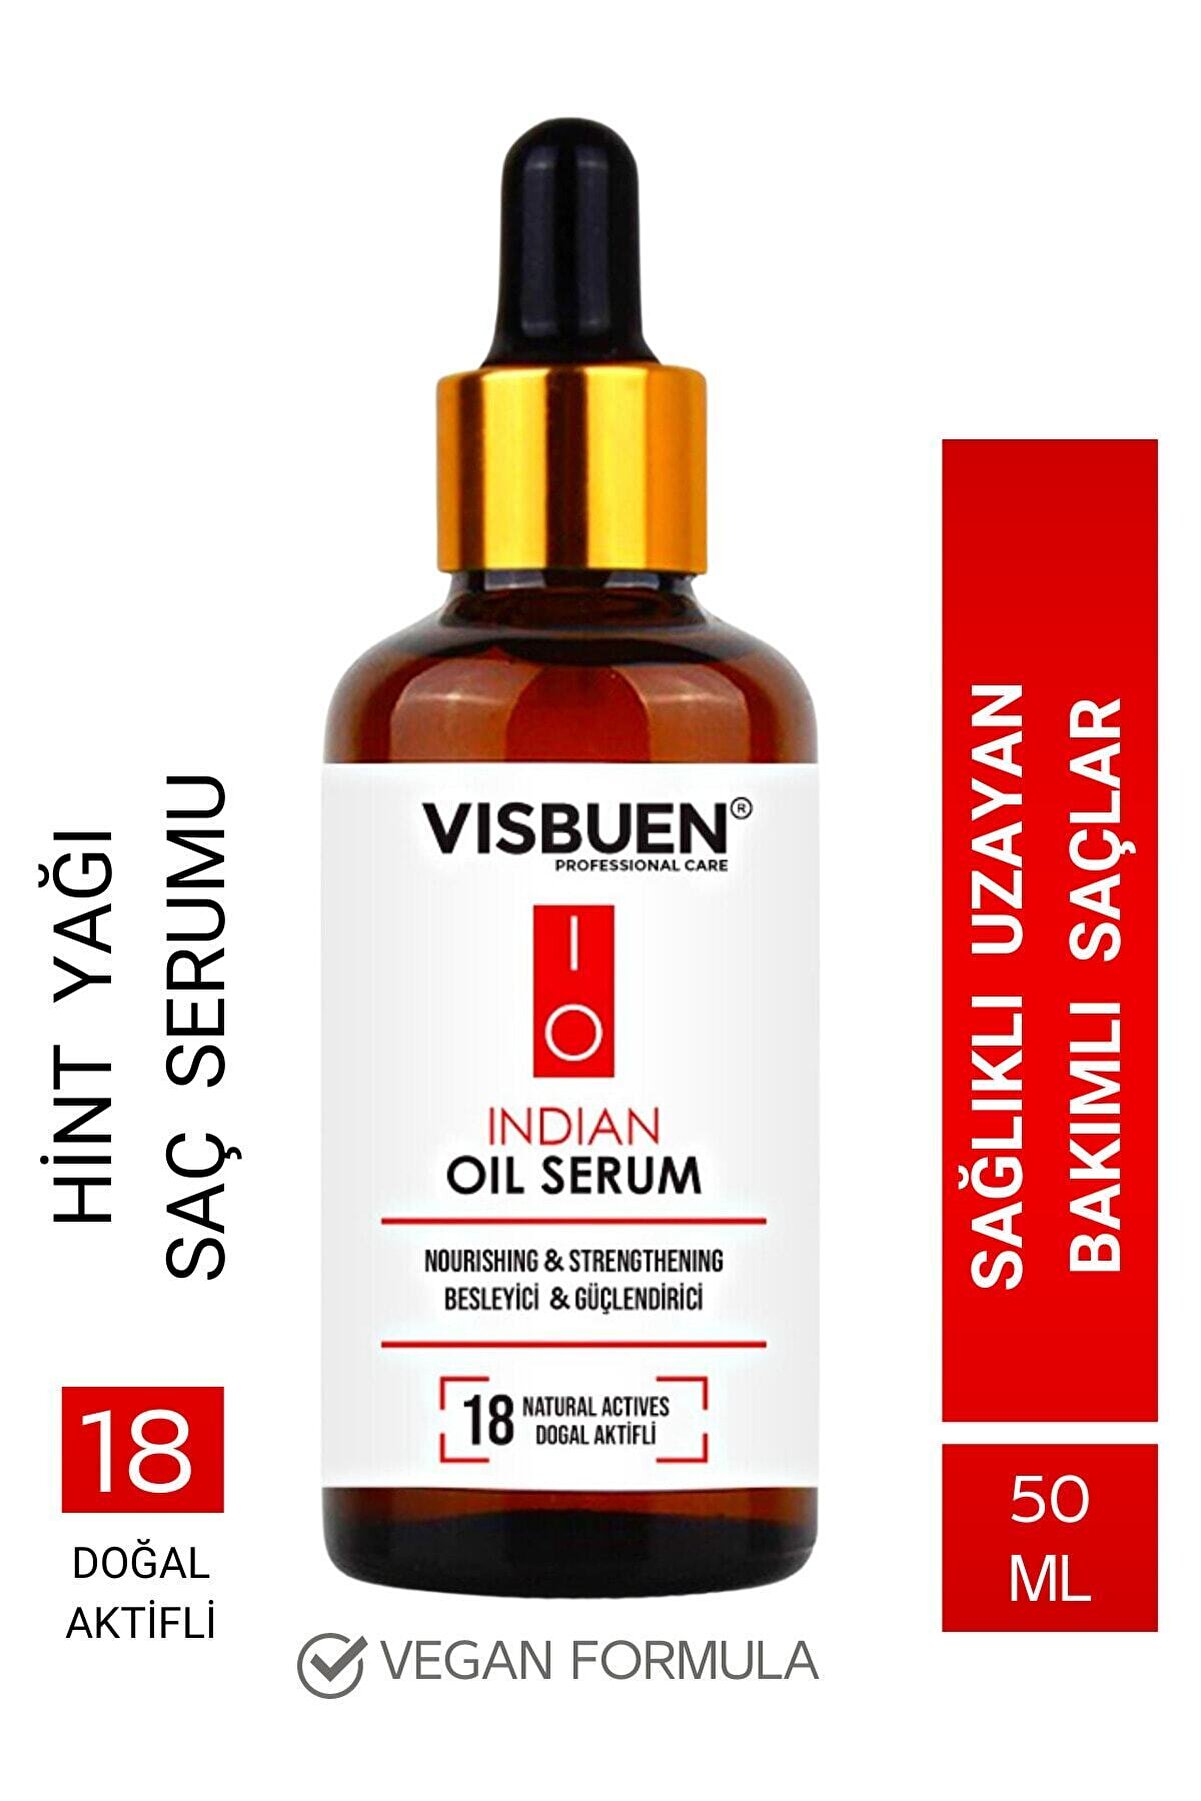 Visbuen Hint Yağı 18 Doğal Aktifli Hızlı Saç Uzatma ve Besleyici Etkili Serum